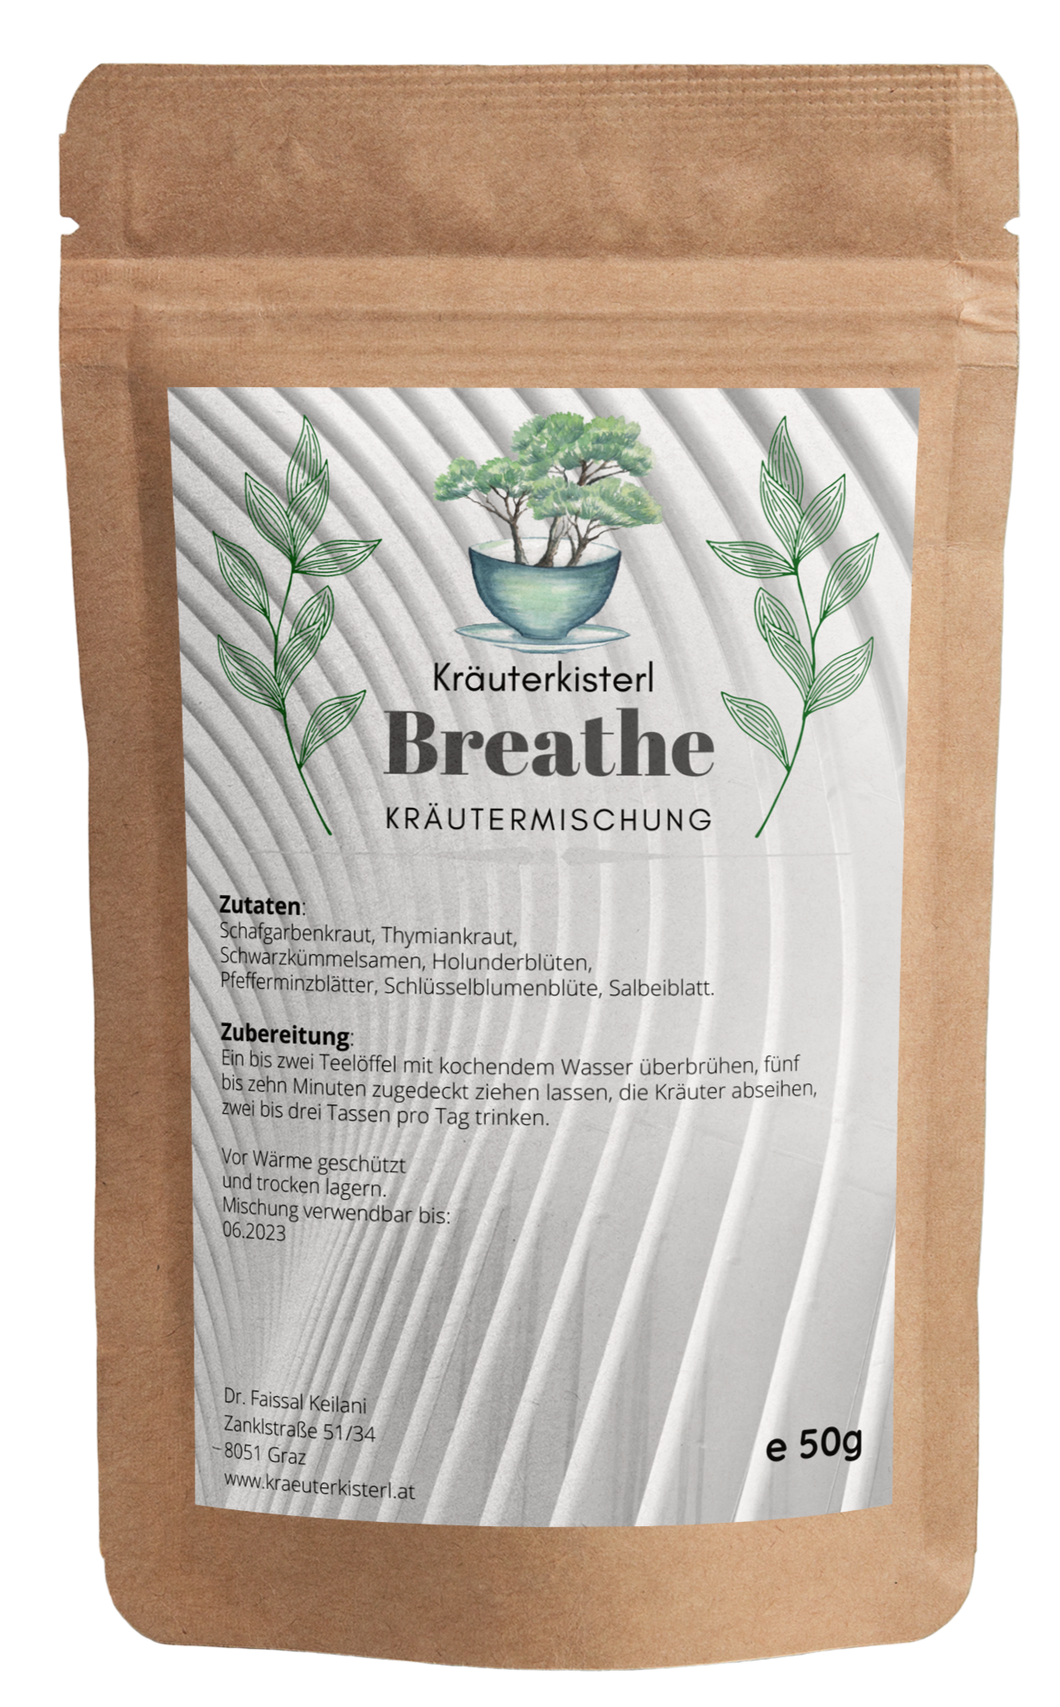 Breathe - Kräutermischung